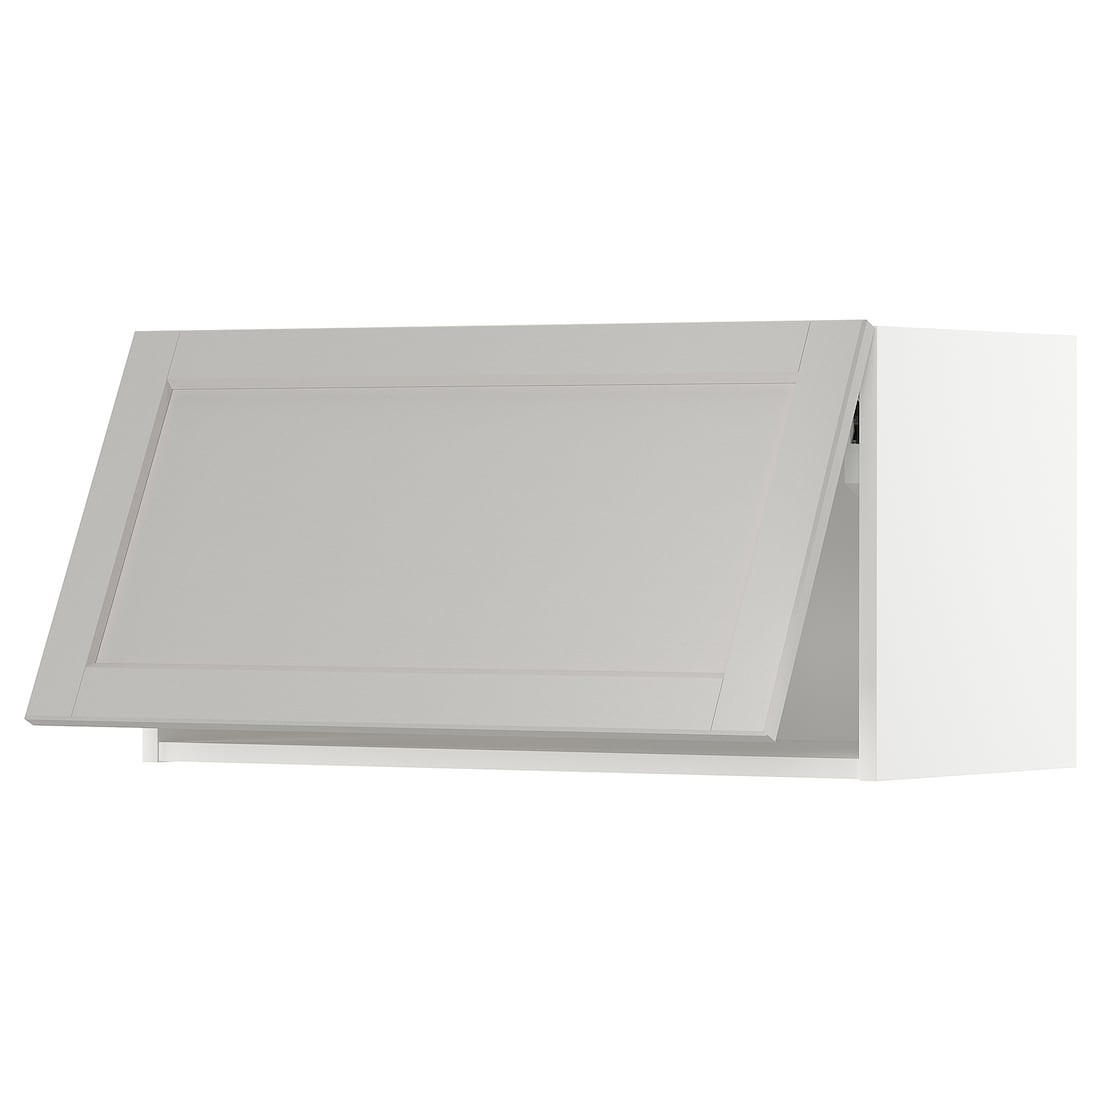 METOD МЕТОД Навесной горизонтальный шкаф, нажимной механизм, белый / Lerhyttan светло-серый, 80x40 см